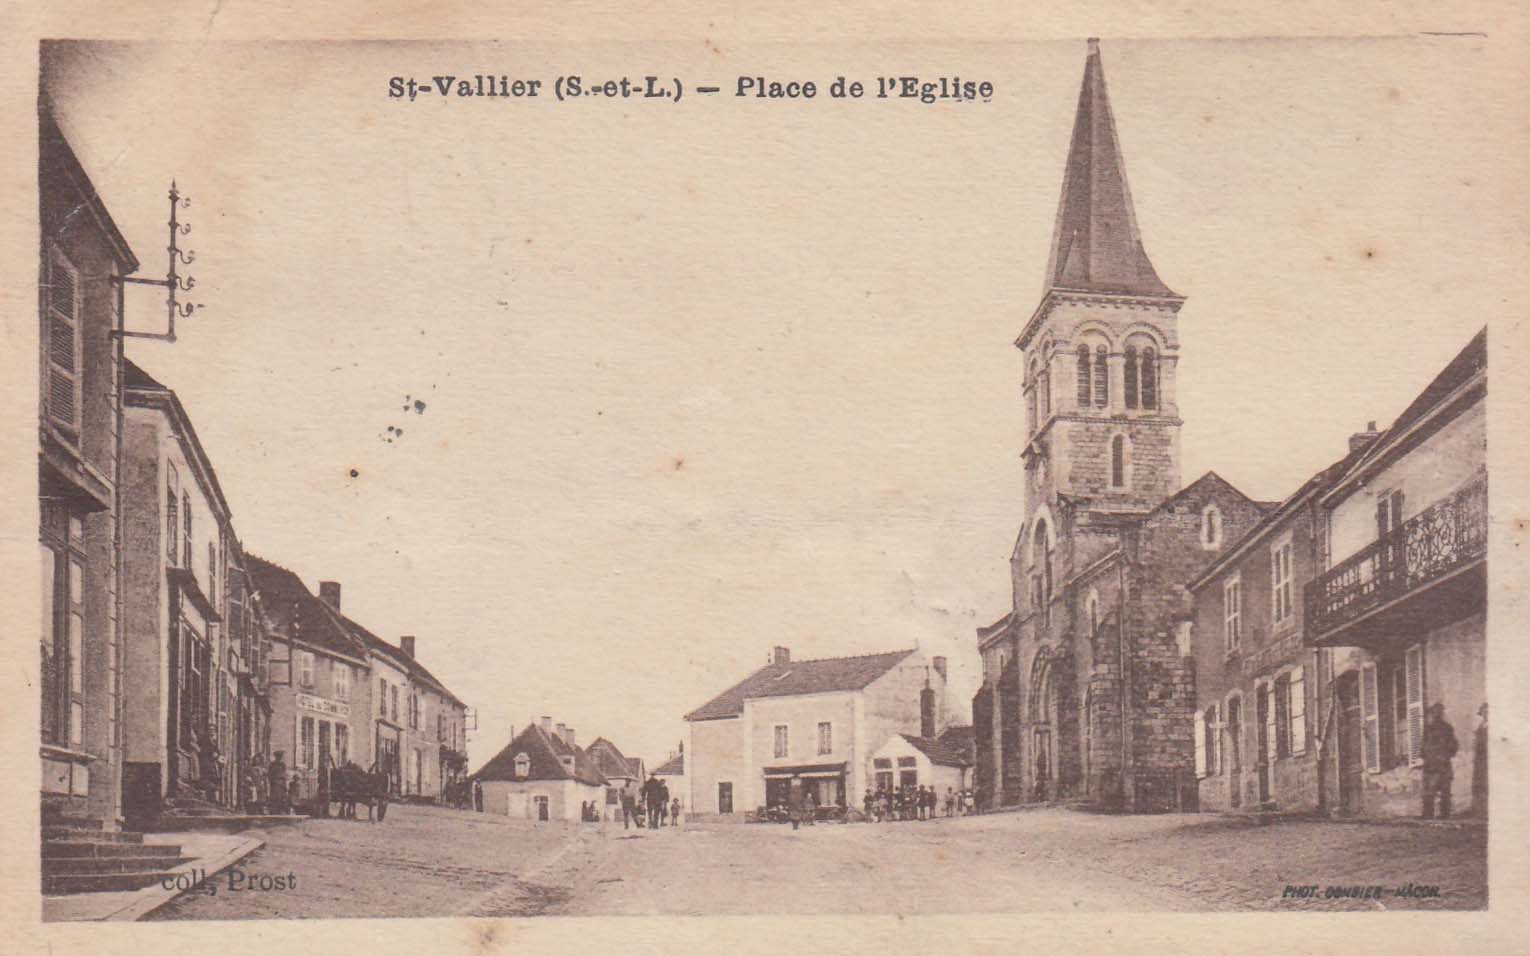 Saint-Vallier (Saône-et-Loire) - Place de l'Eglise - Coll, Prost